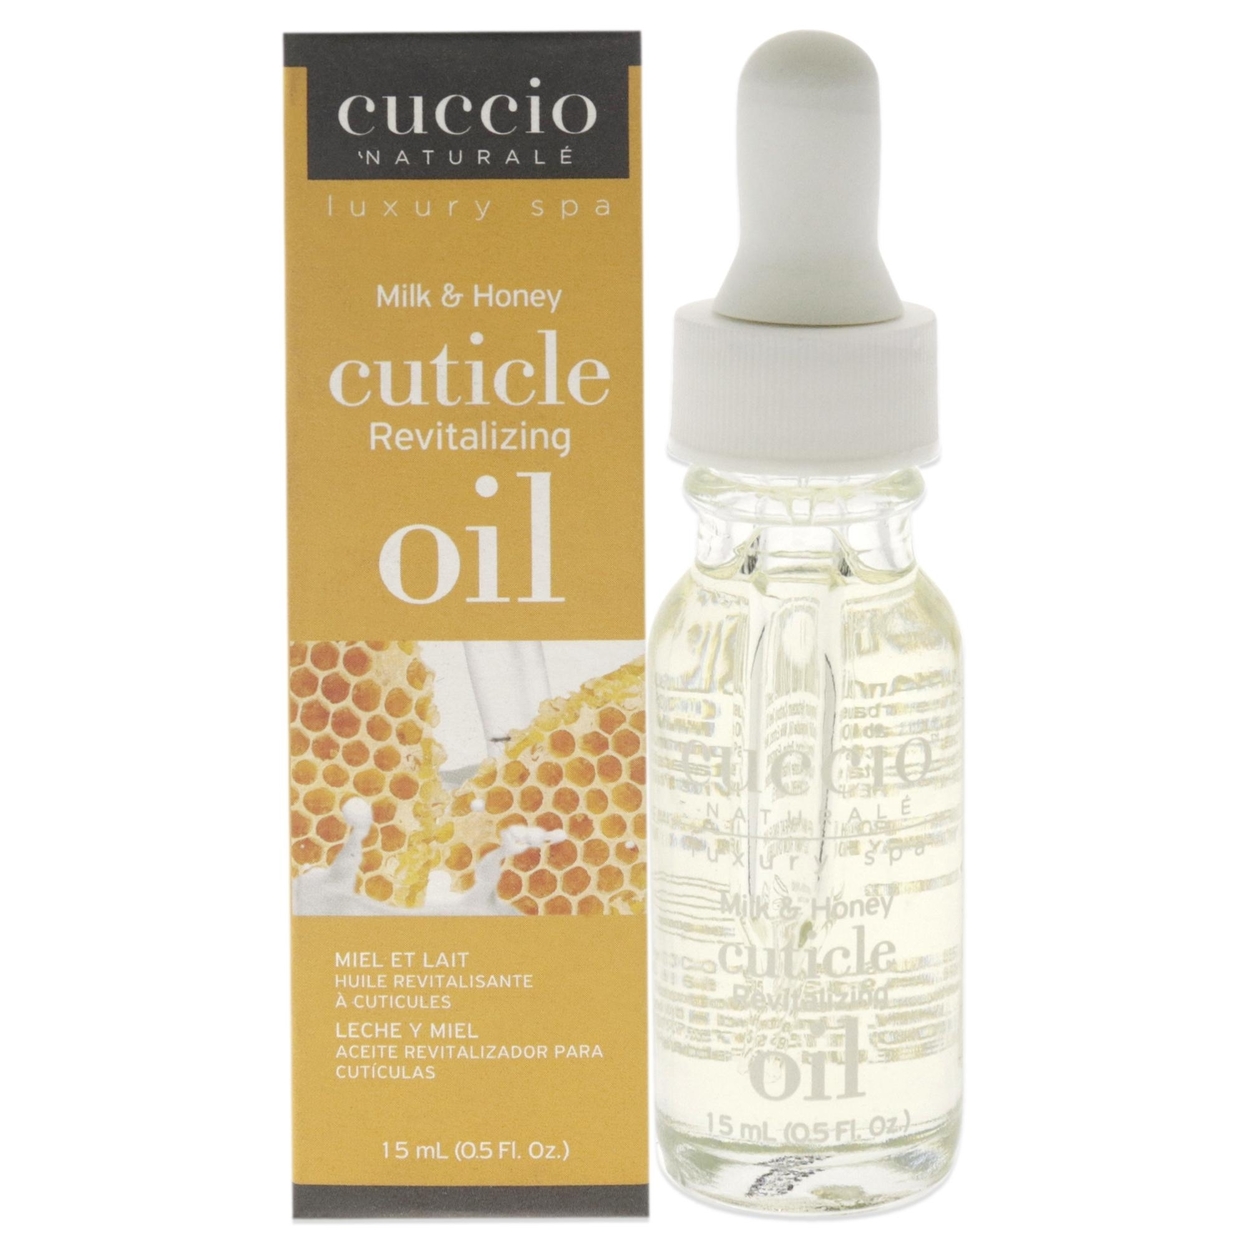 Cuccio Naturale Cuticle Revitalizing Oil - Milk And Honey 0.5 Oz